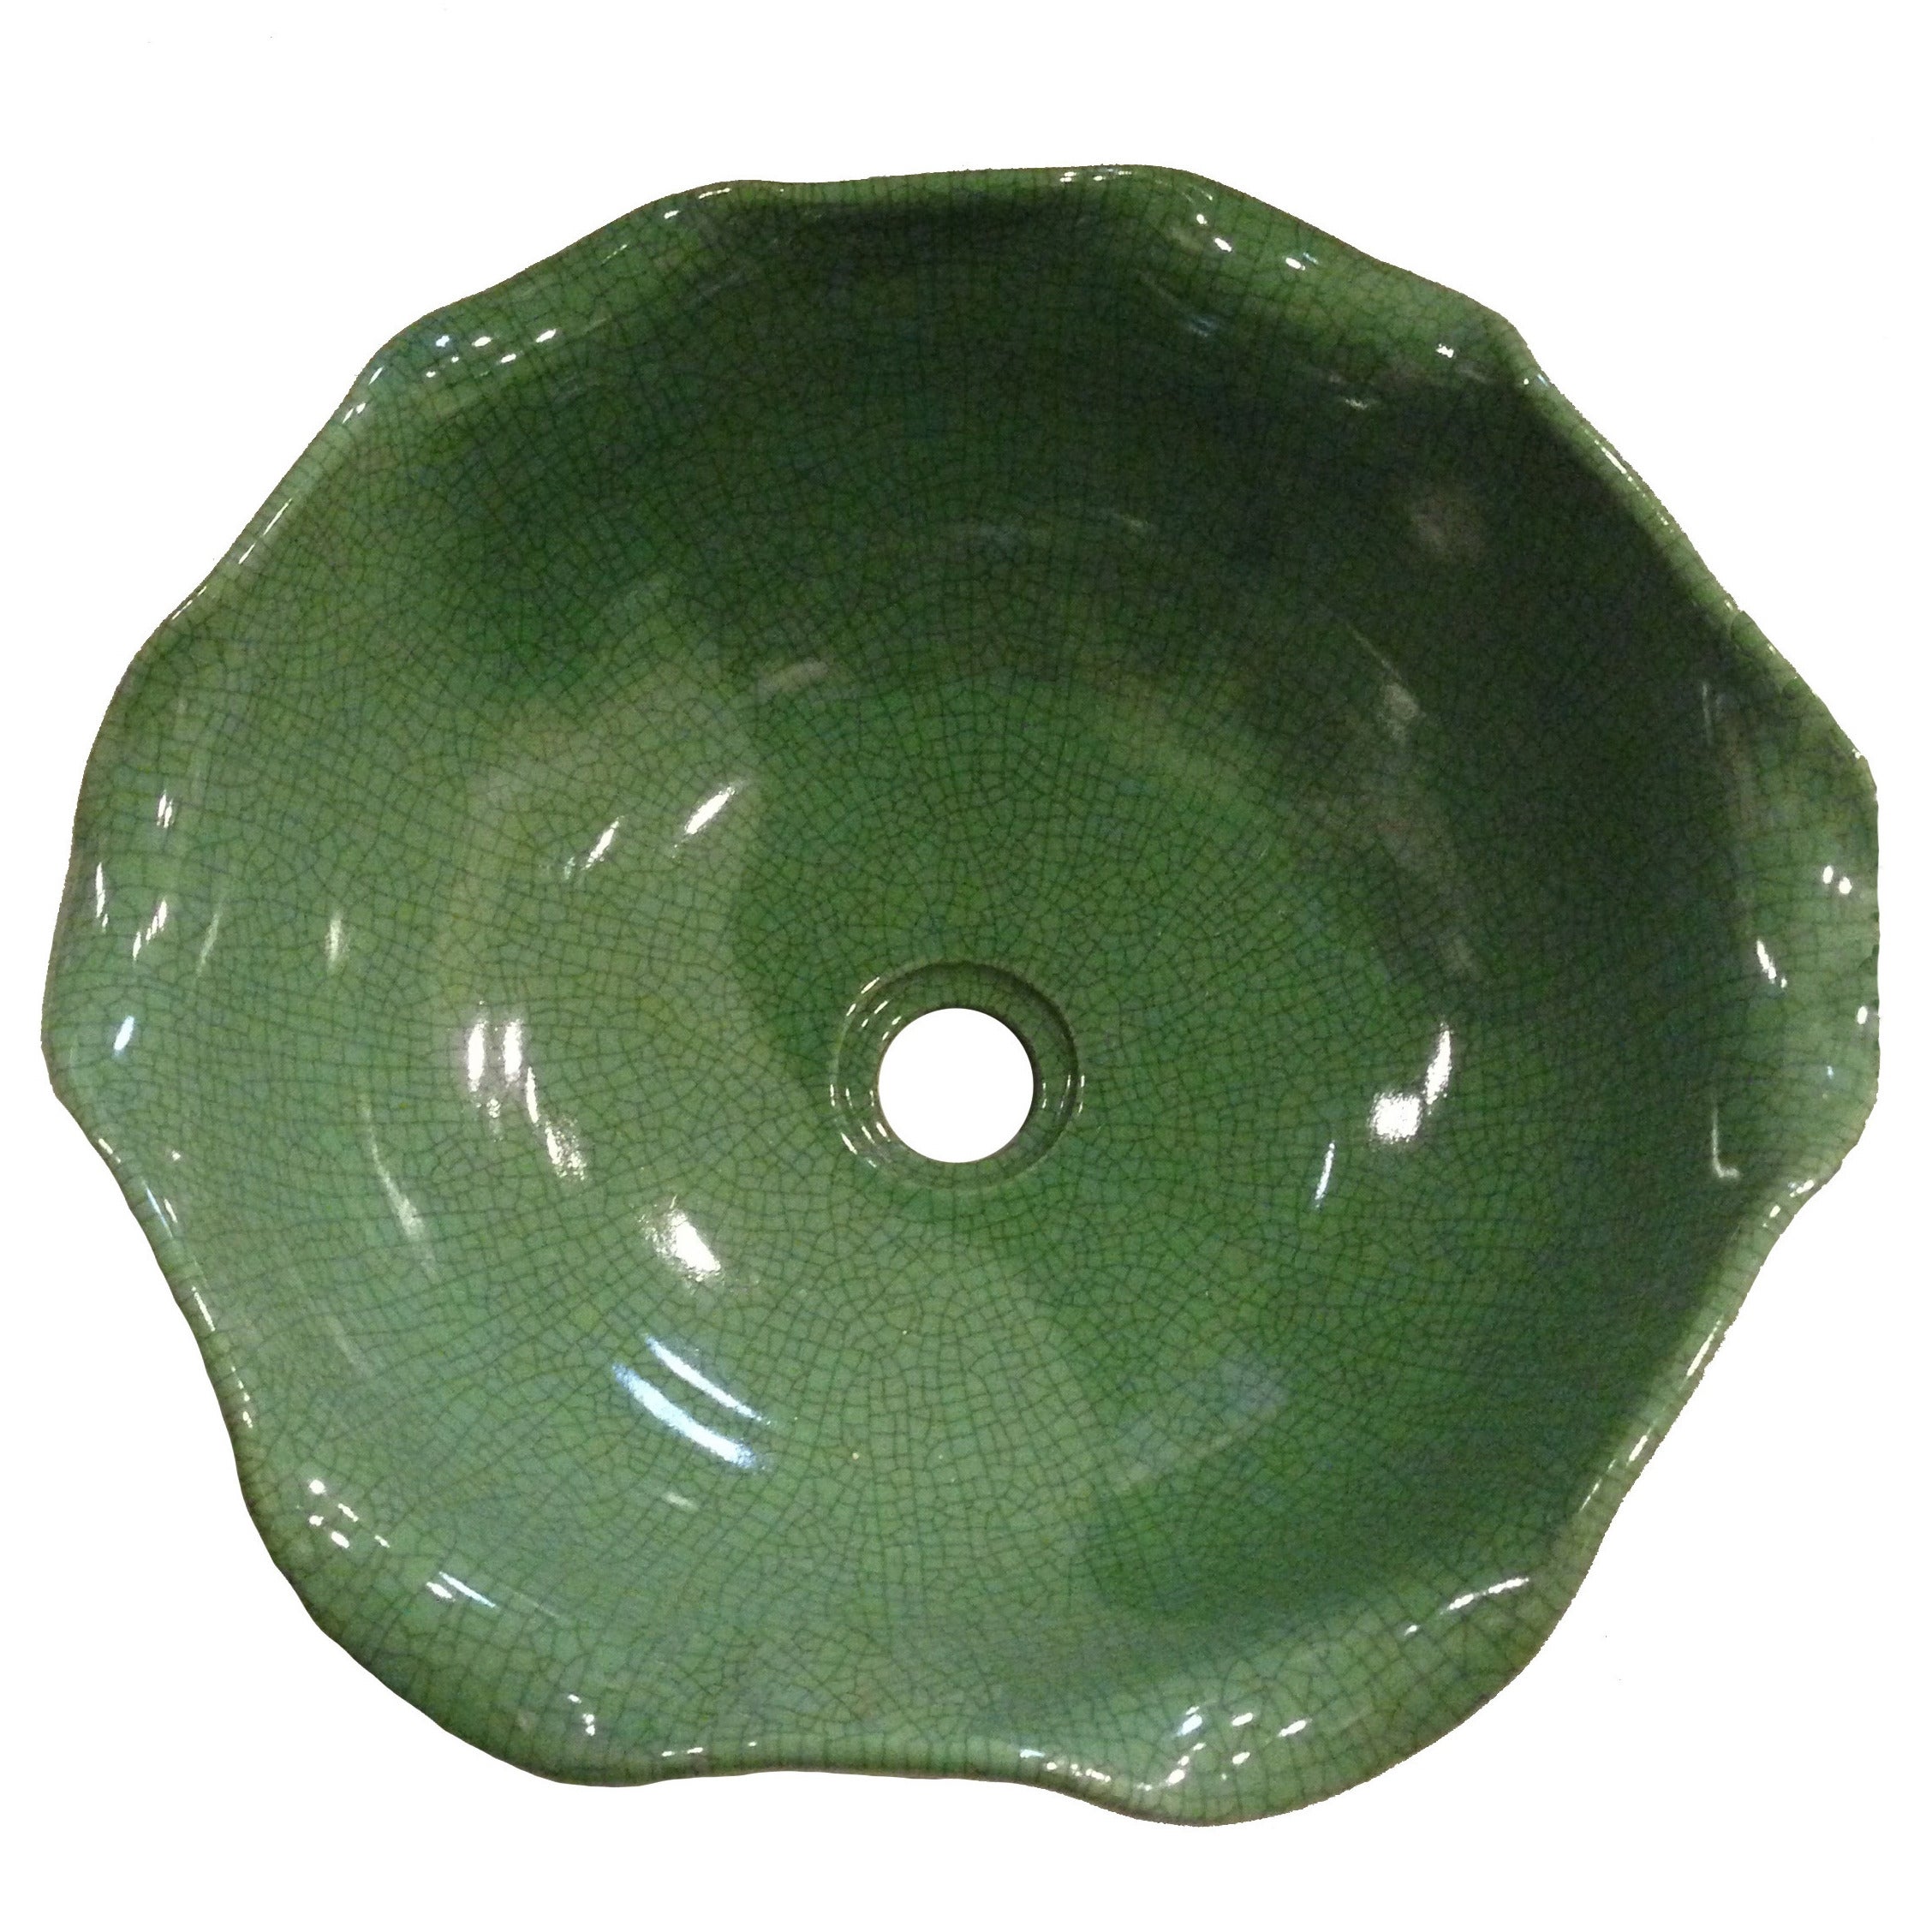 Ceramic Sink or Planter, Crackle Celadon, Green Lotus Leaf, Planter For Sale